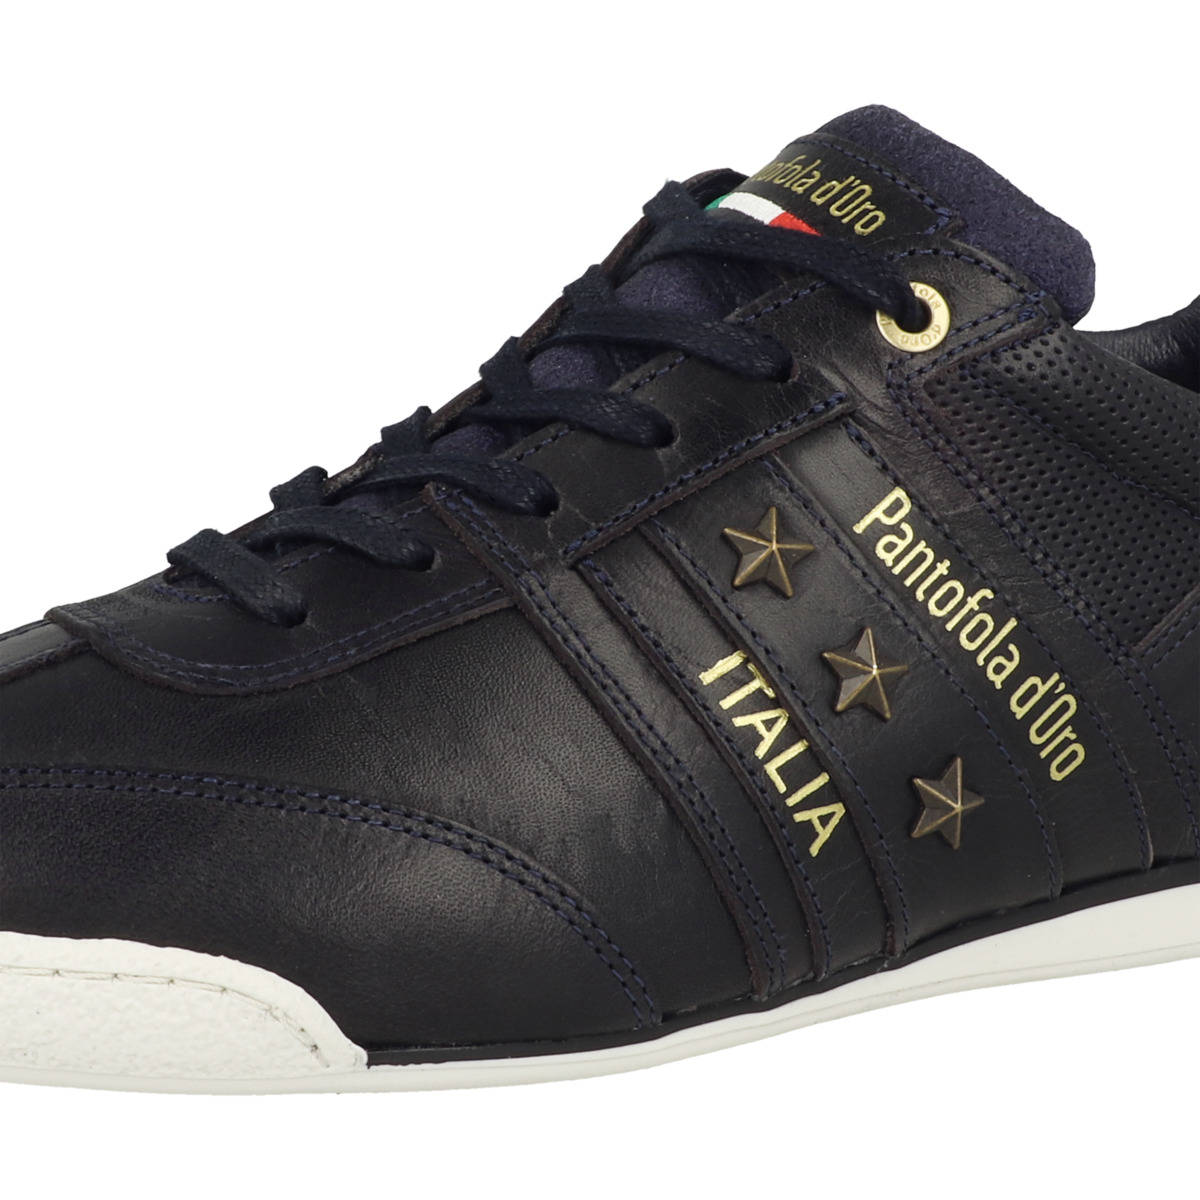 Pantofola d Oro Imola Classic 2.0 Uomo Low Sneaker dunkelblau